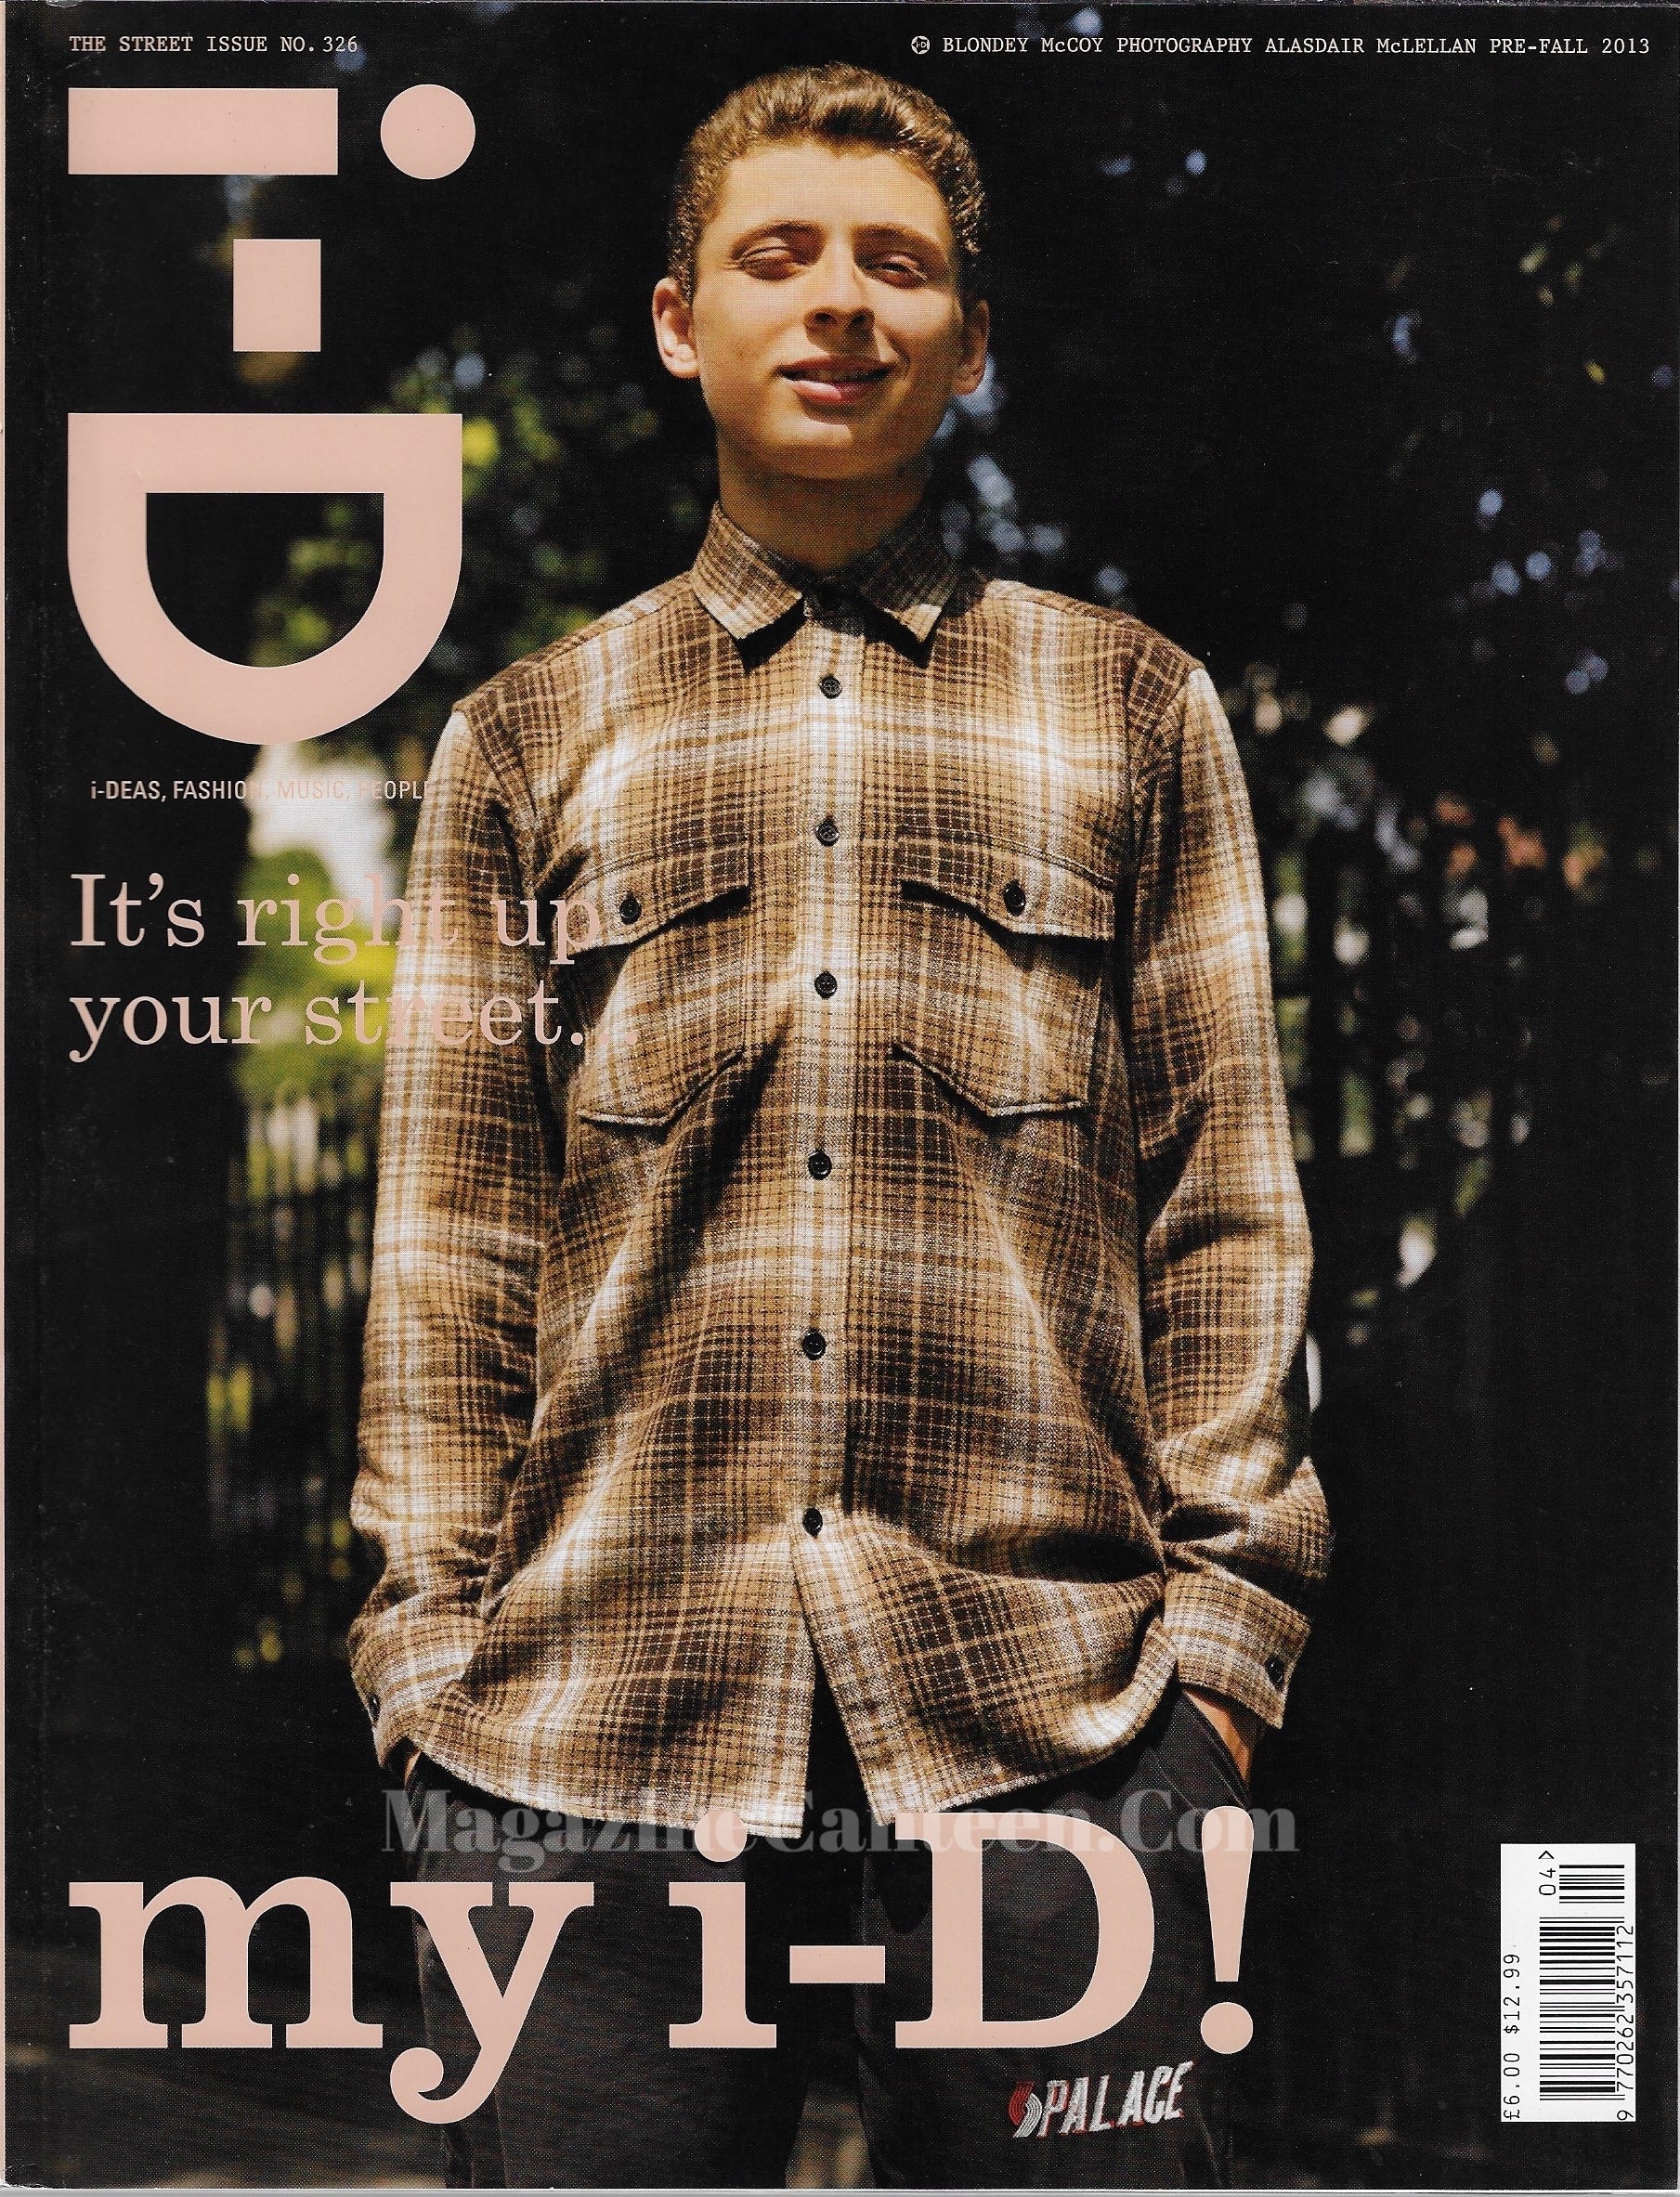 I-D Magazine 326 - Blondey McCoy 2013